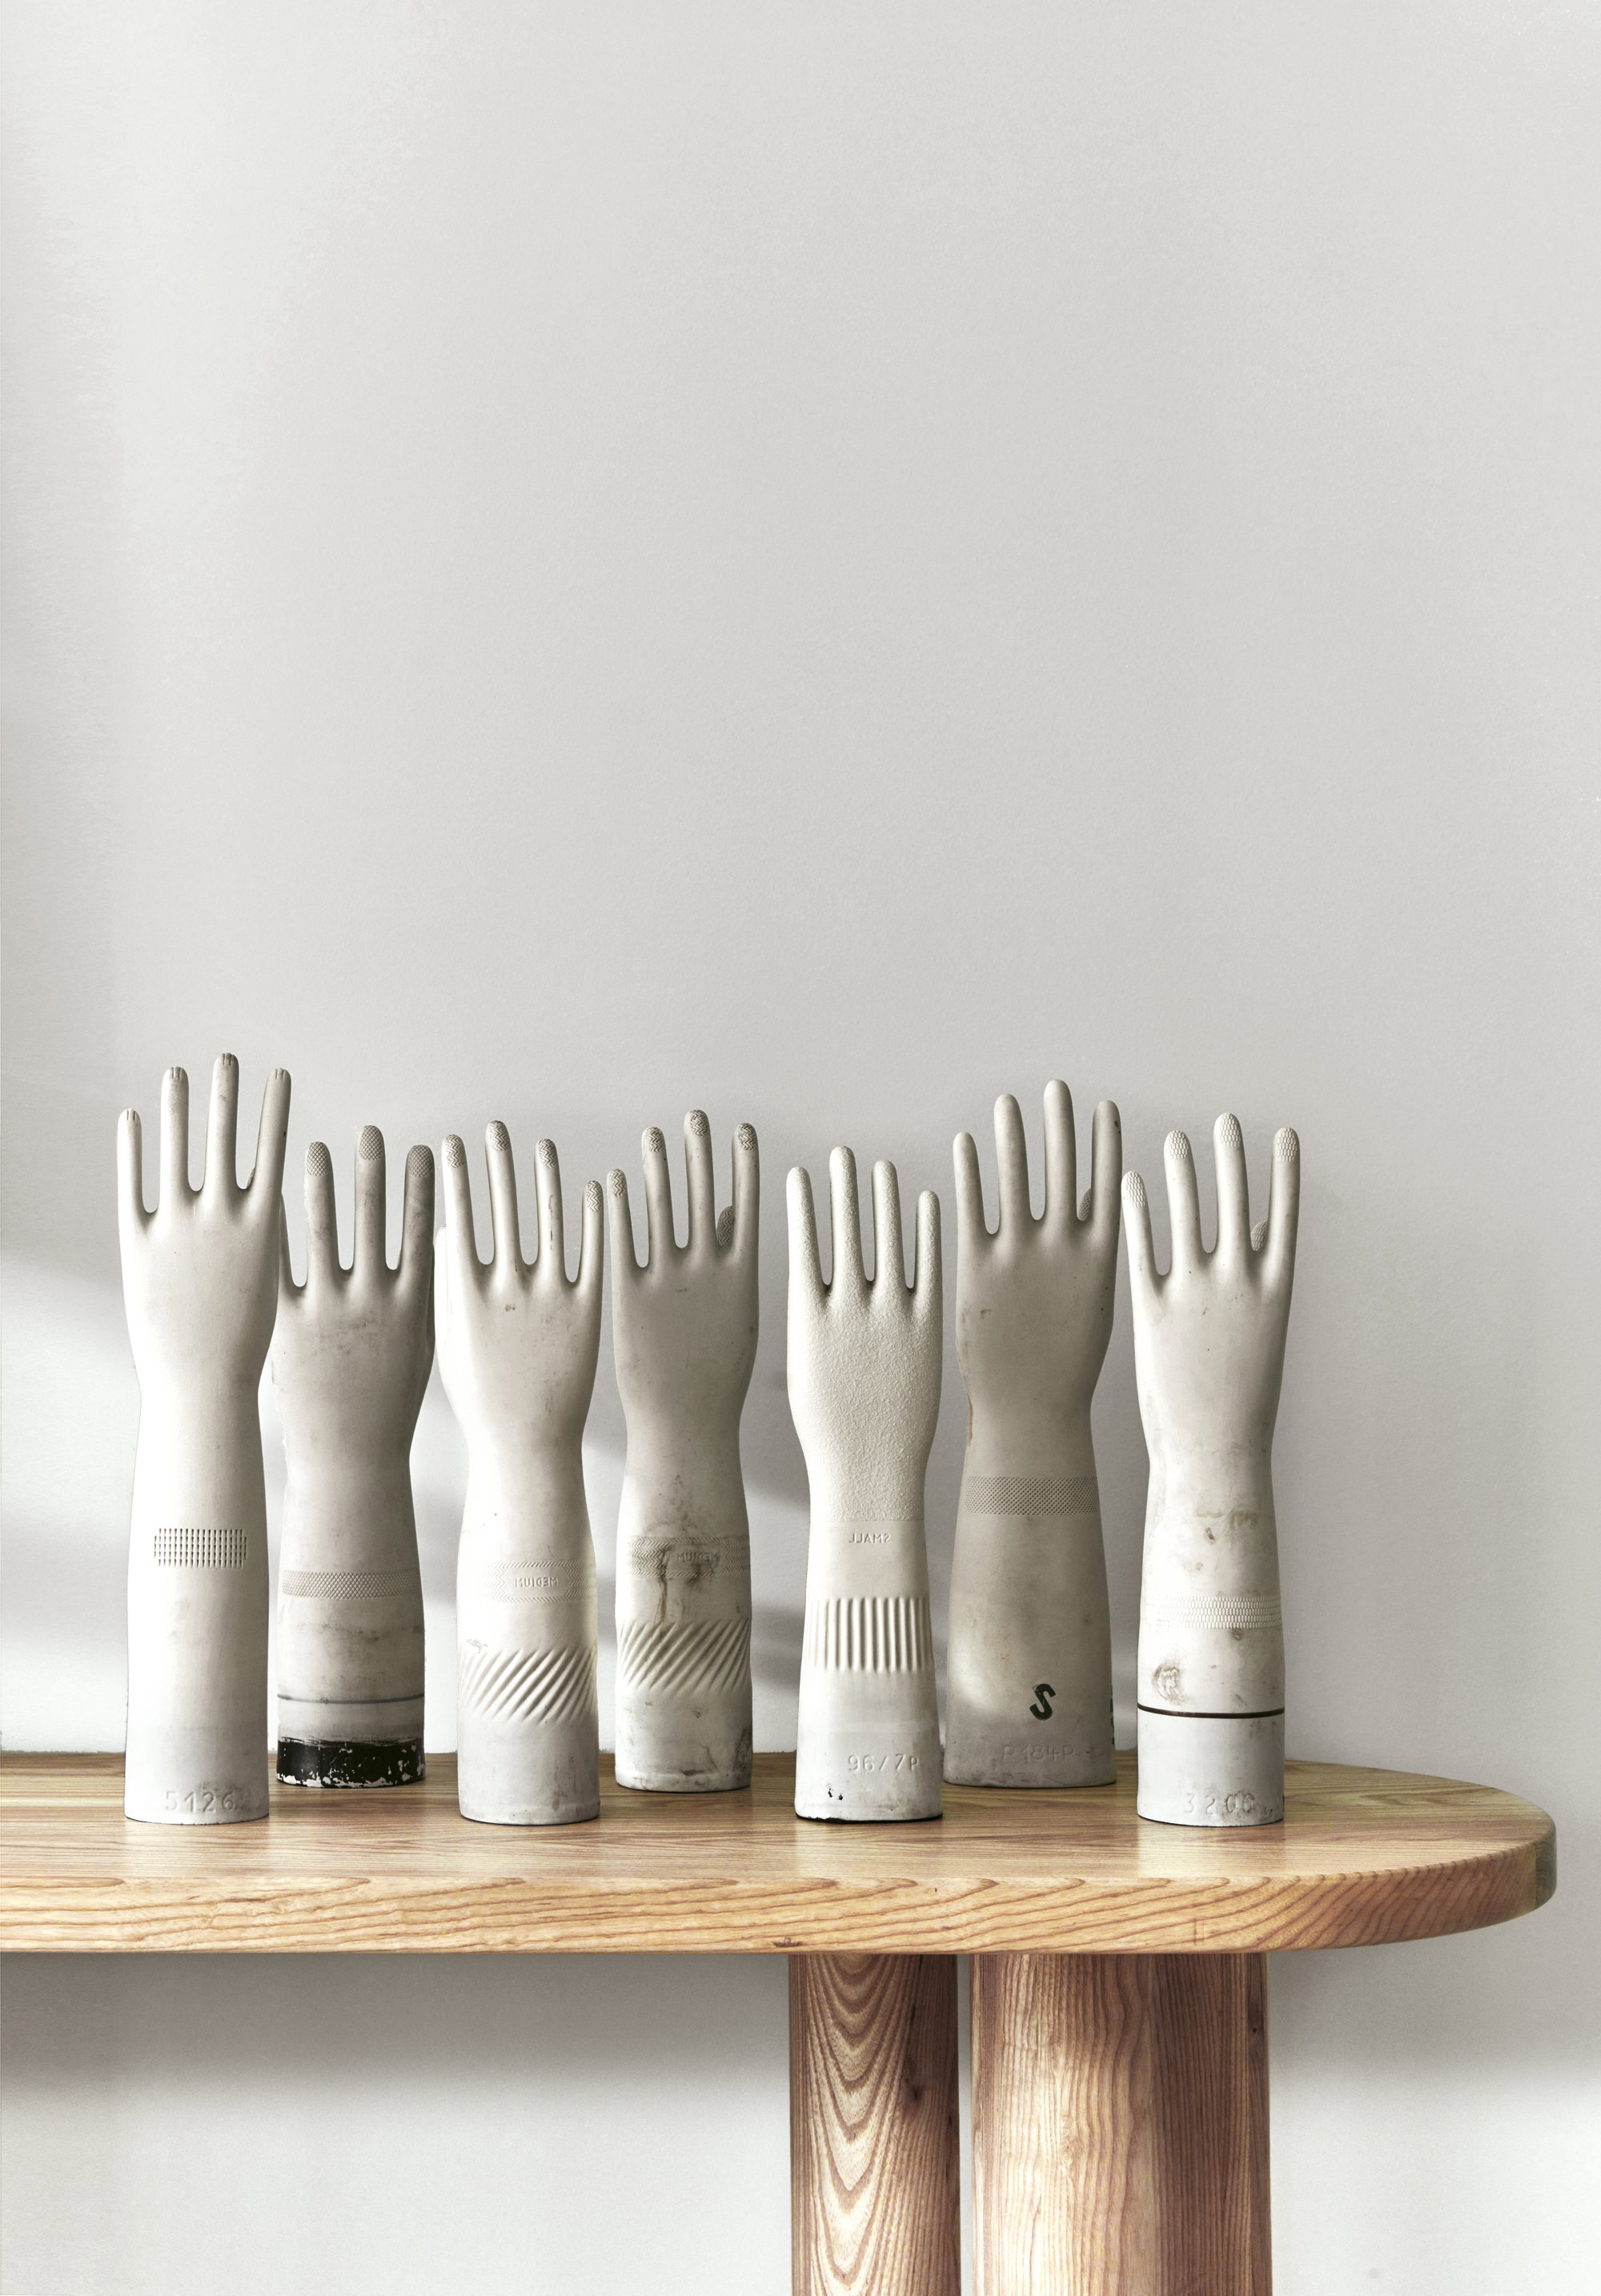 Las esculturas de manos sobre la consola del comedor